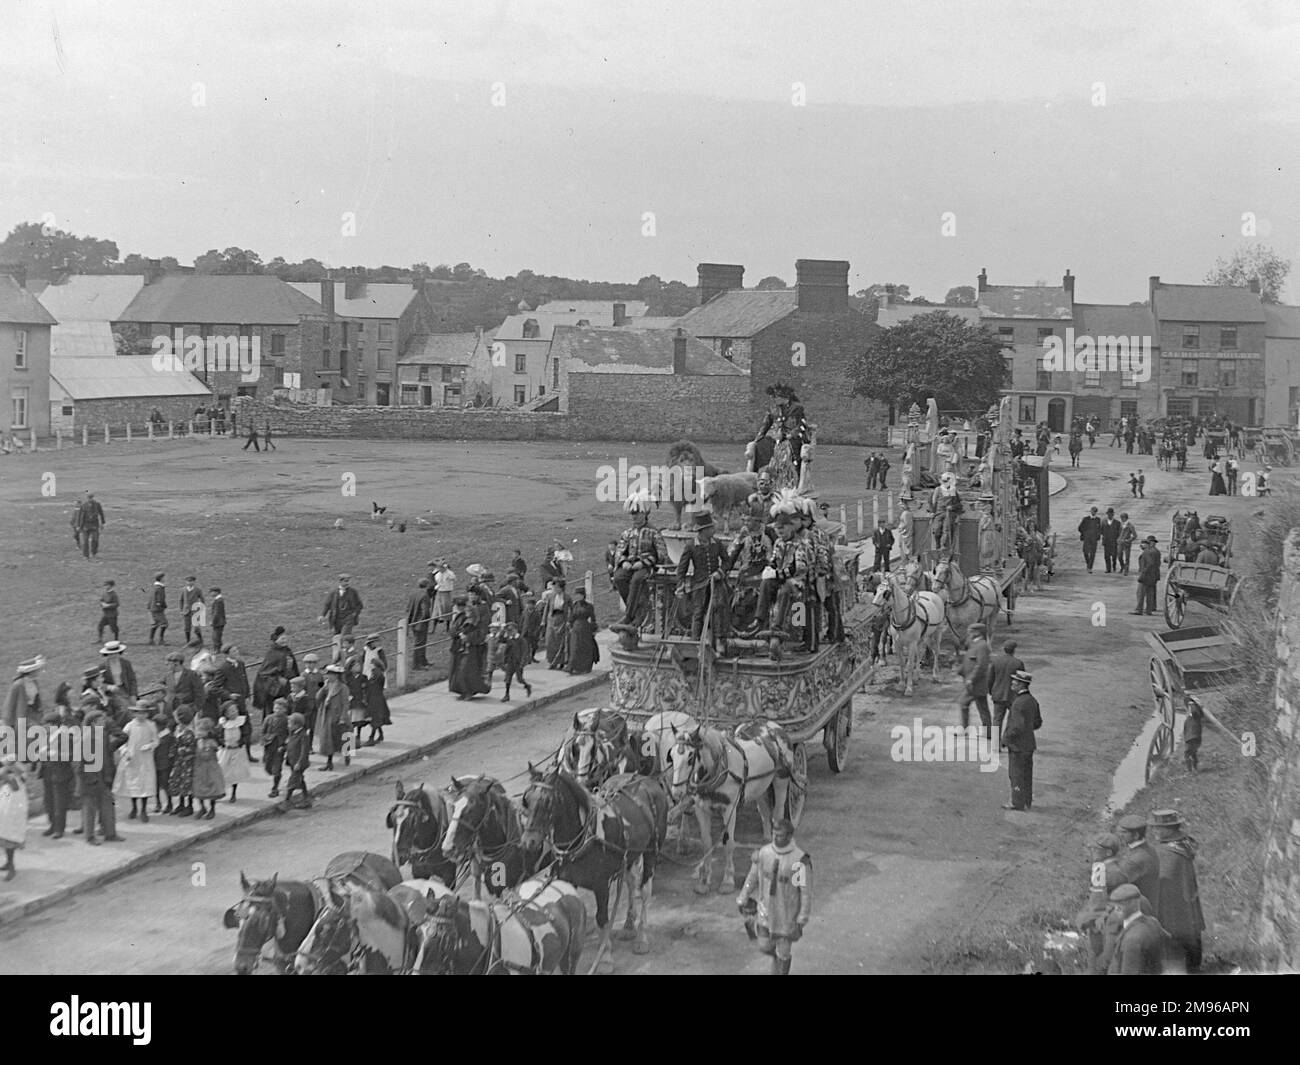 Street scene, che mostra parte della parata del Circus di Sanger durante una visita a Haverfordwest, Pembrokeshire, Dyfed, Galles del Sud. La prima di queste due elaborate carrozze trainate da cavalli comprende un leone e un agnello, con i cavalieri vestiti in costumi di fantasia. Le persone sui marciapiedi si fermano e guardano. Sanger fu un famoso impresario del circo, che a partire dagli anni '1850s organizzò spettacoli spettacolari in grandi locali in tutto il paese. Foto Stock